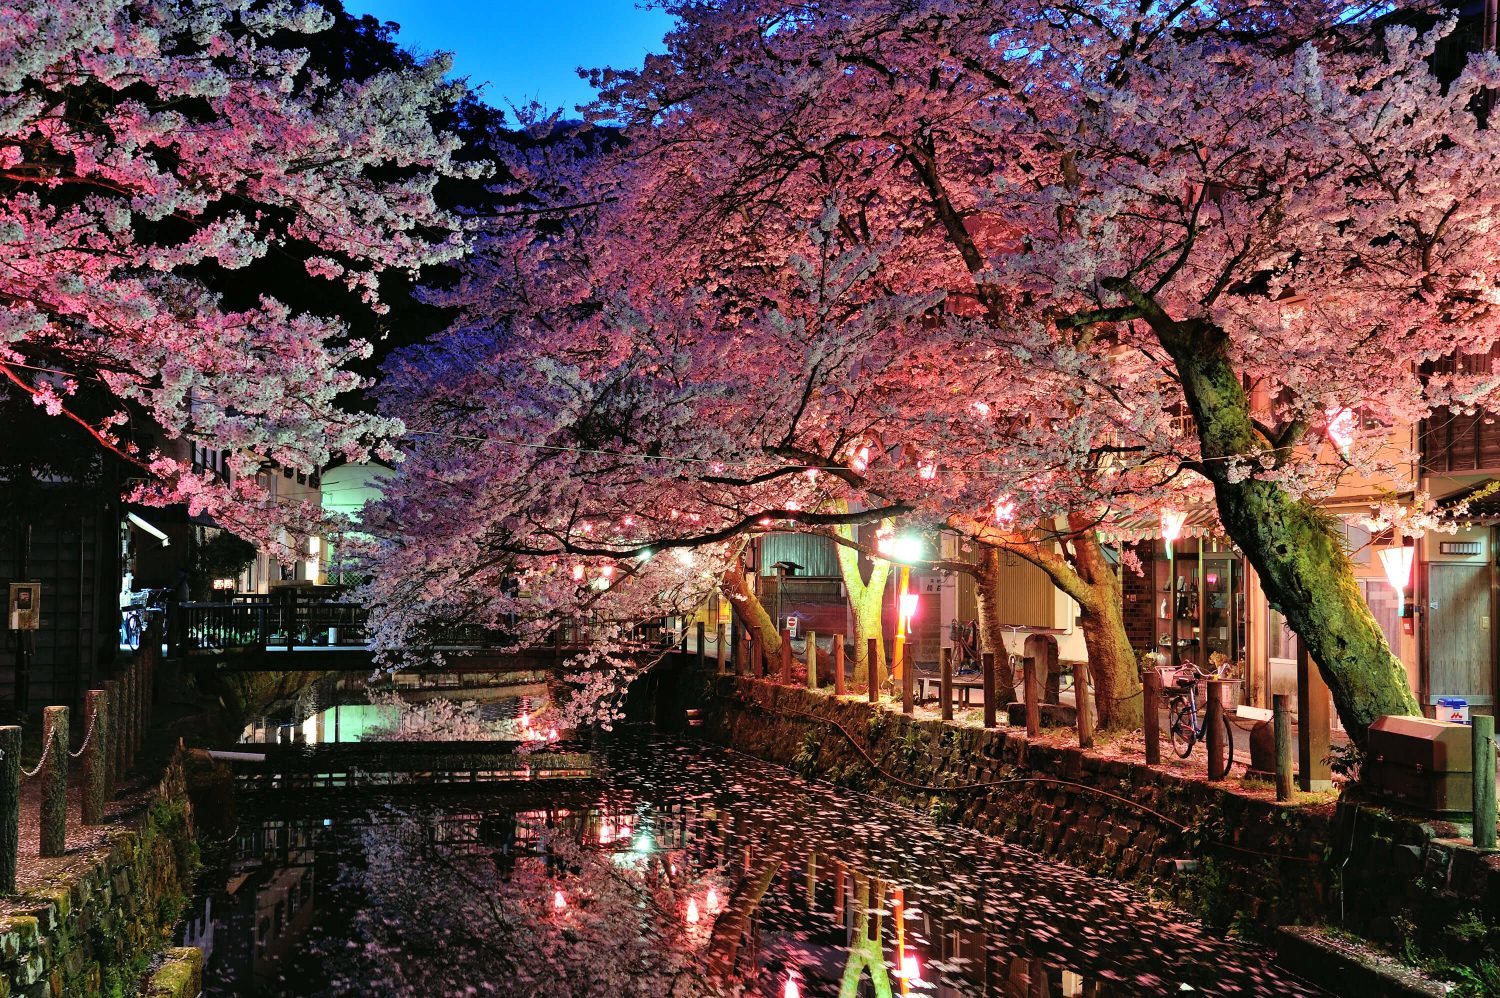 night cherry blossoms sakura light up illumination Kinosaki Onsen